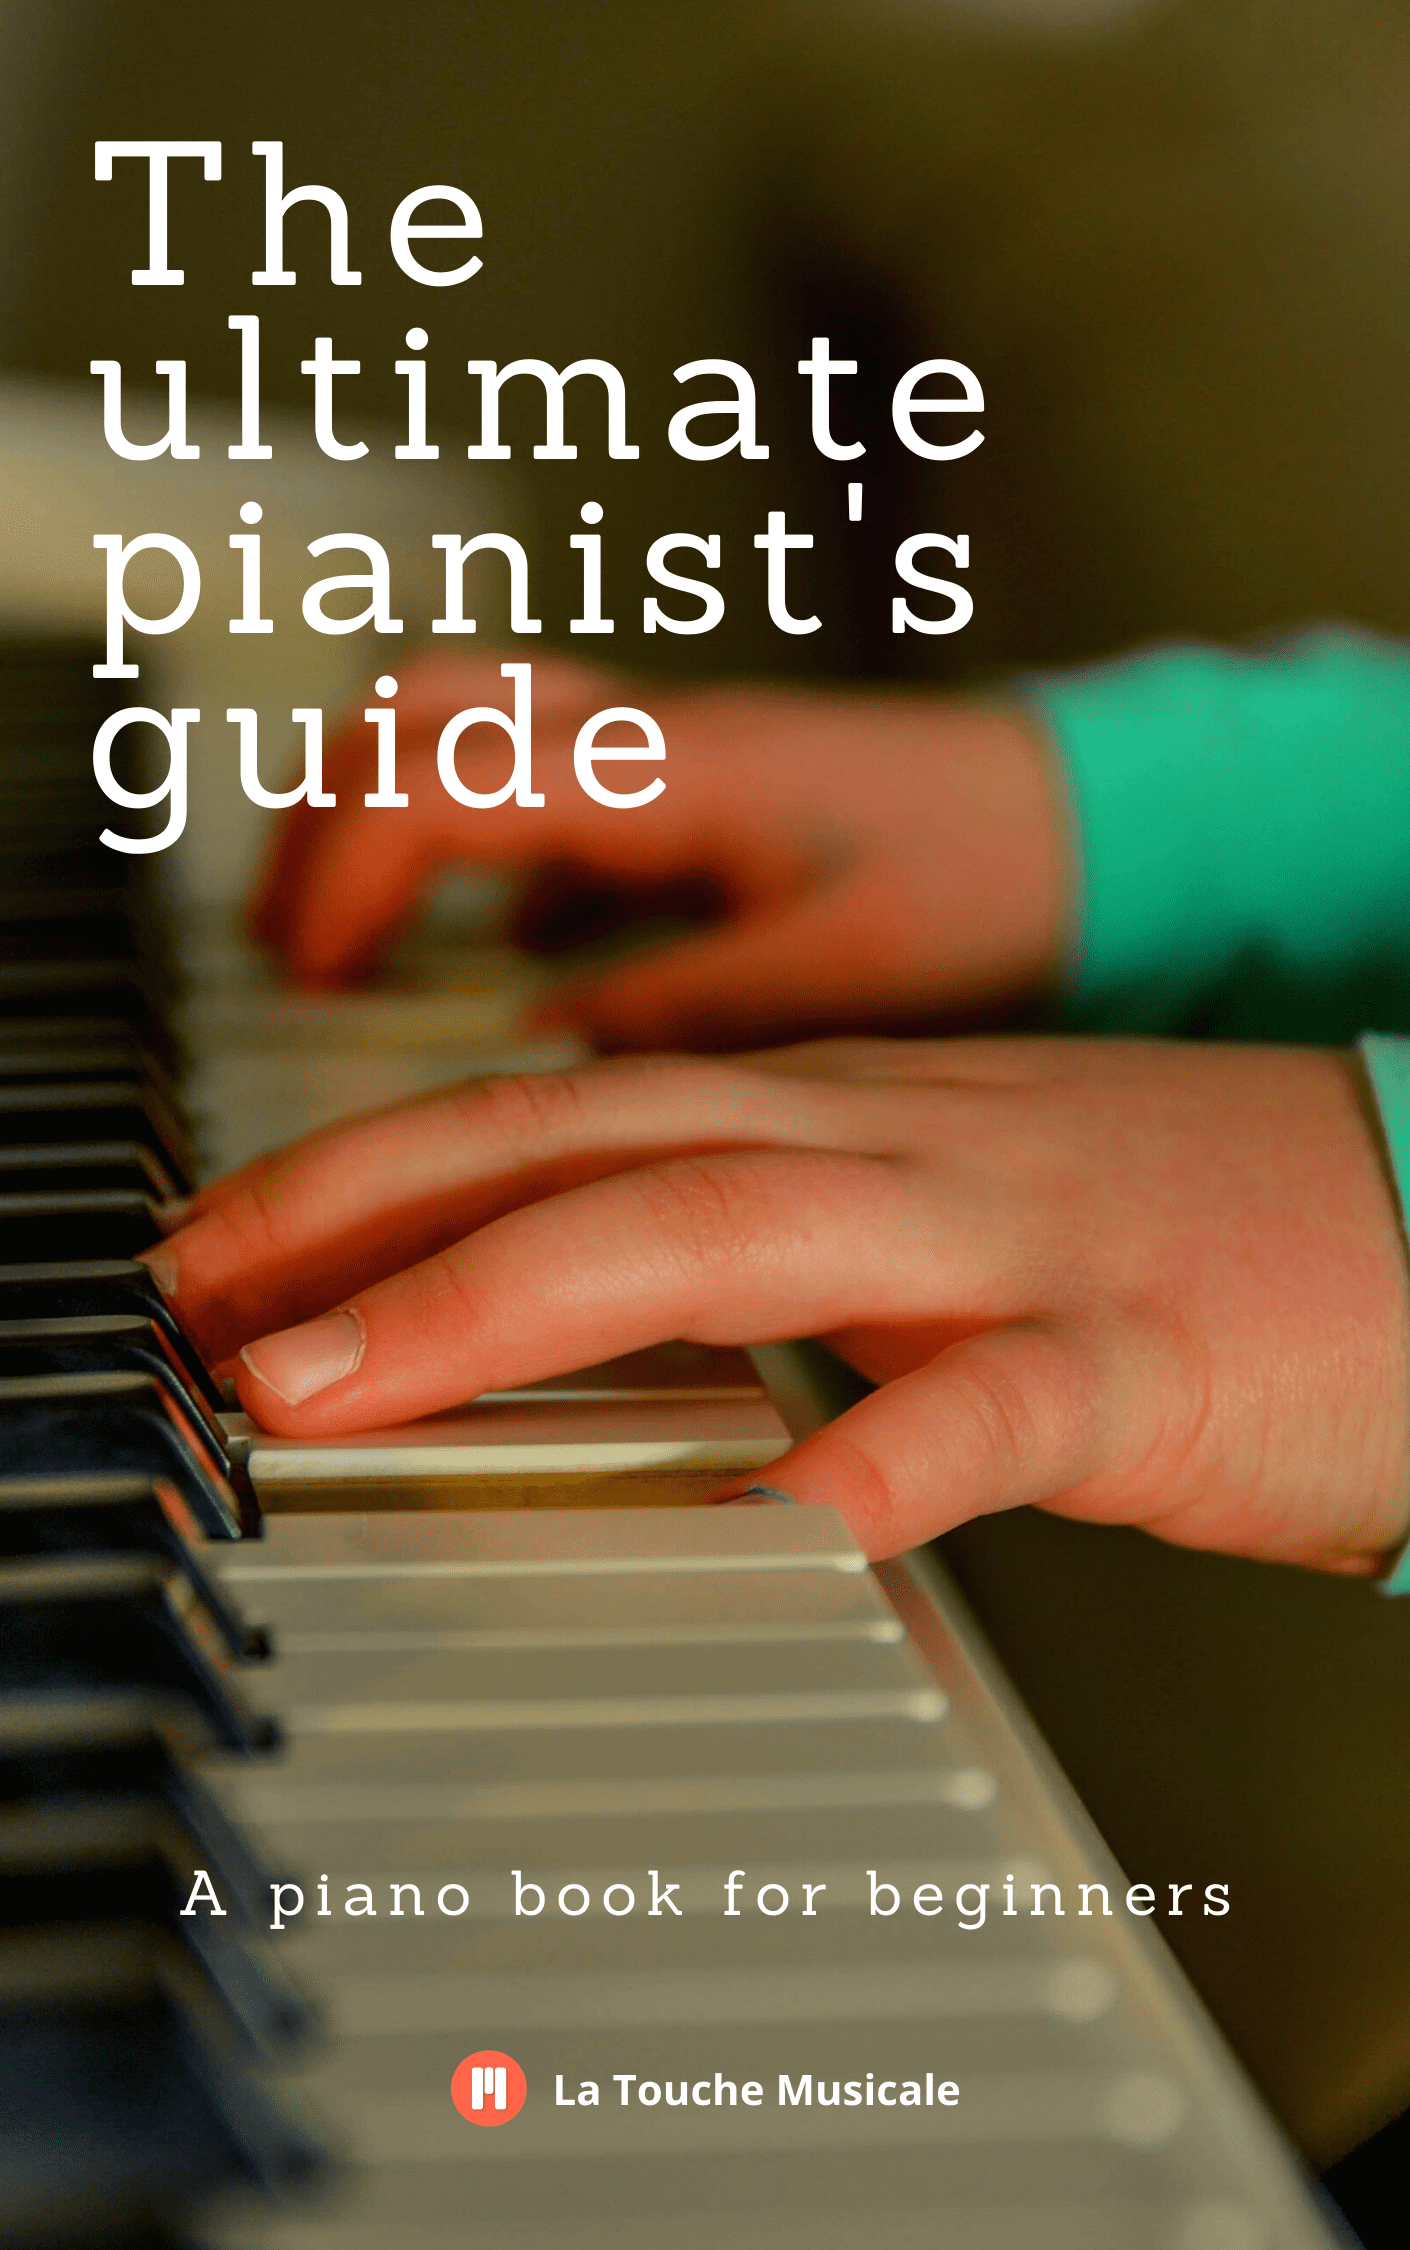 atlántico Consumir instalaciones Libro de piano para principiantes gratis en PDF - La Touche Musicale